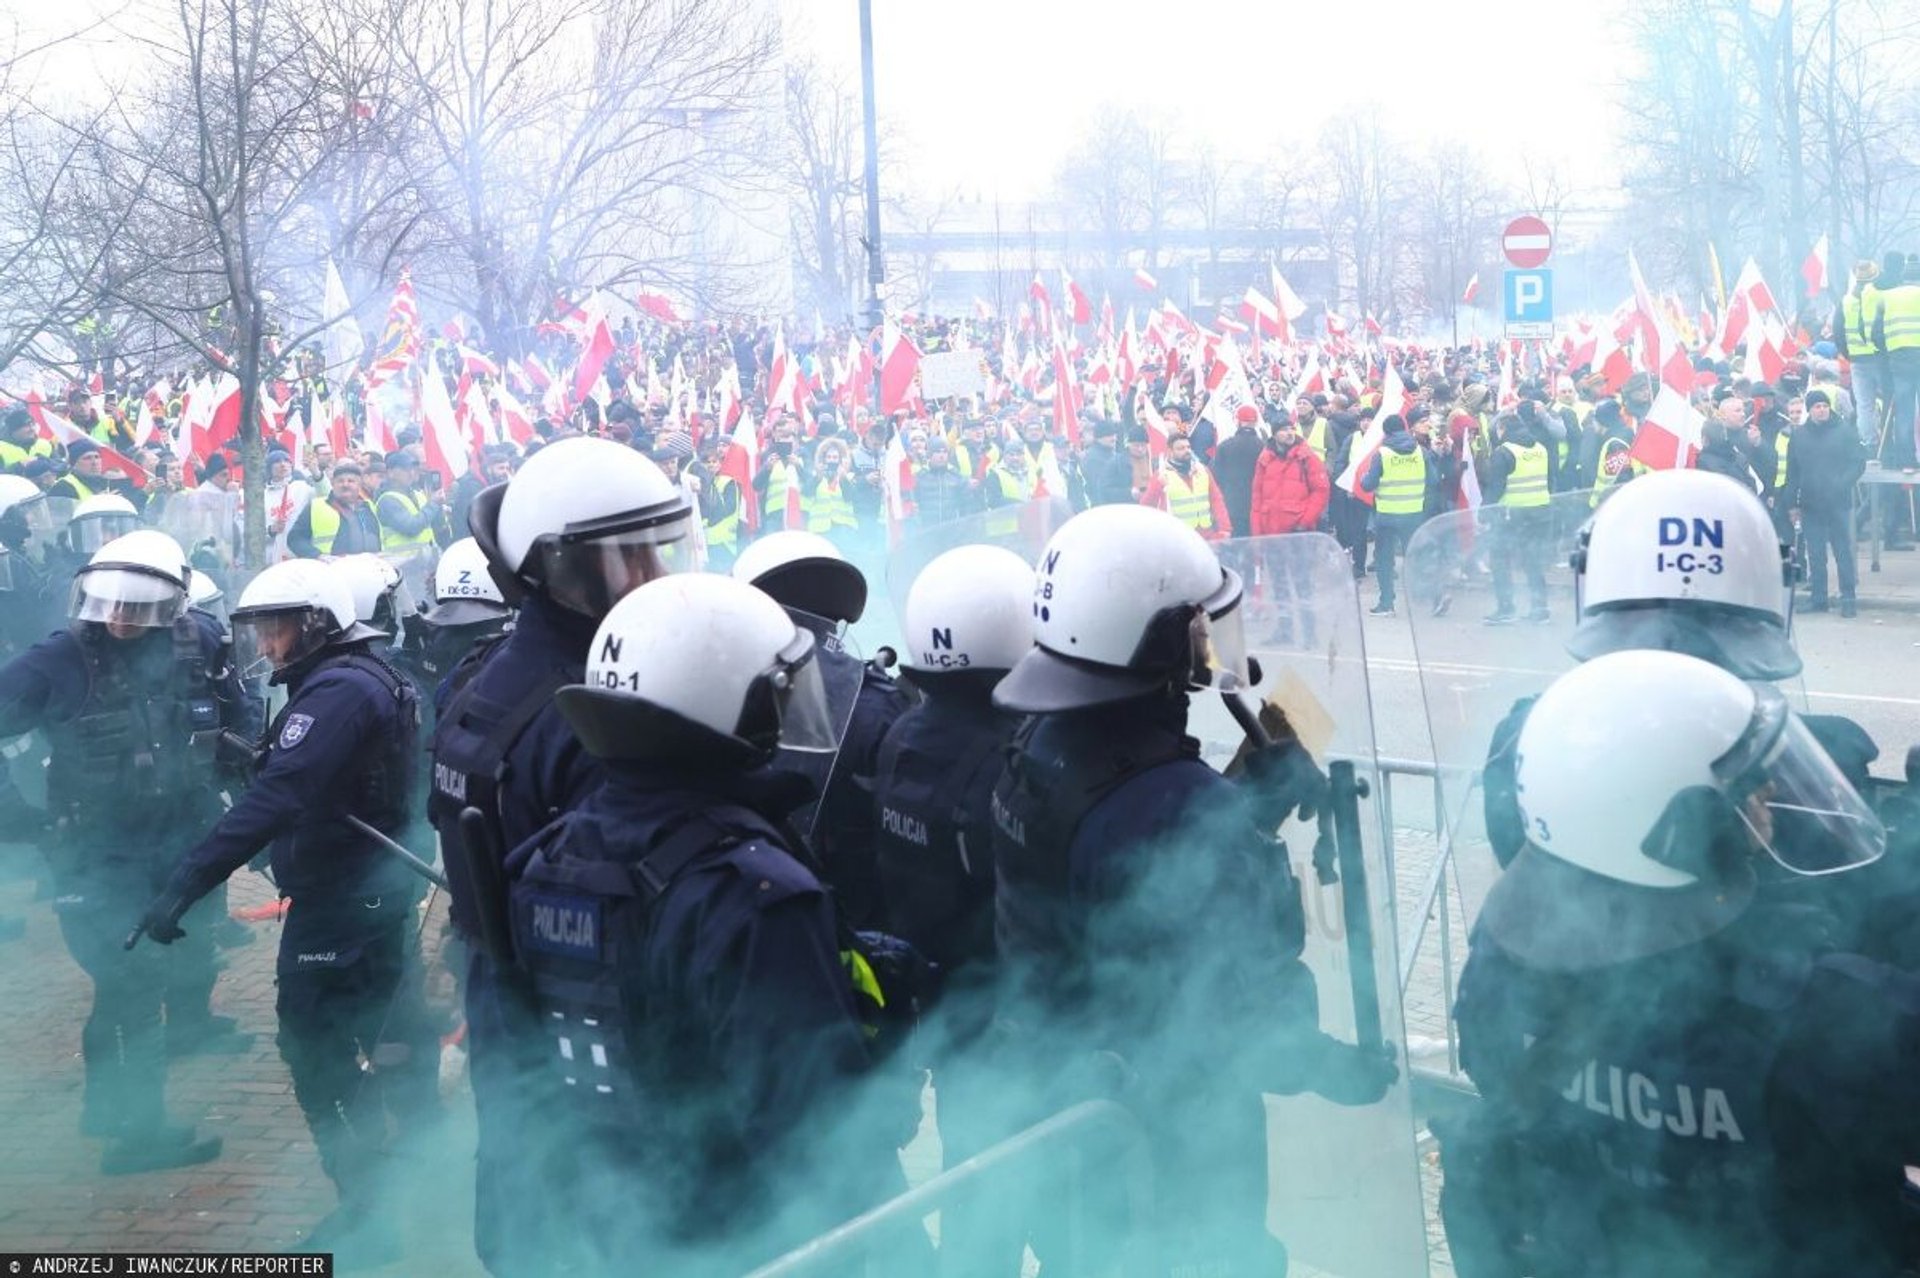 Мітинг польських фермерів переріс у сутички з поліцією. Фото: ANDRZEJ IWANCZUK/REPORTER